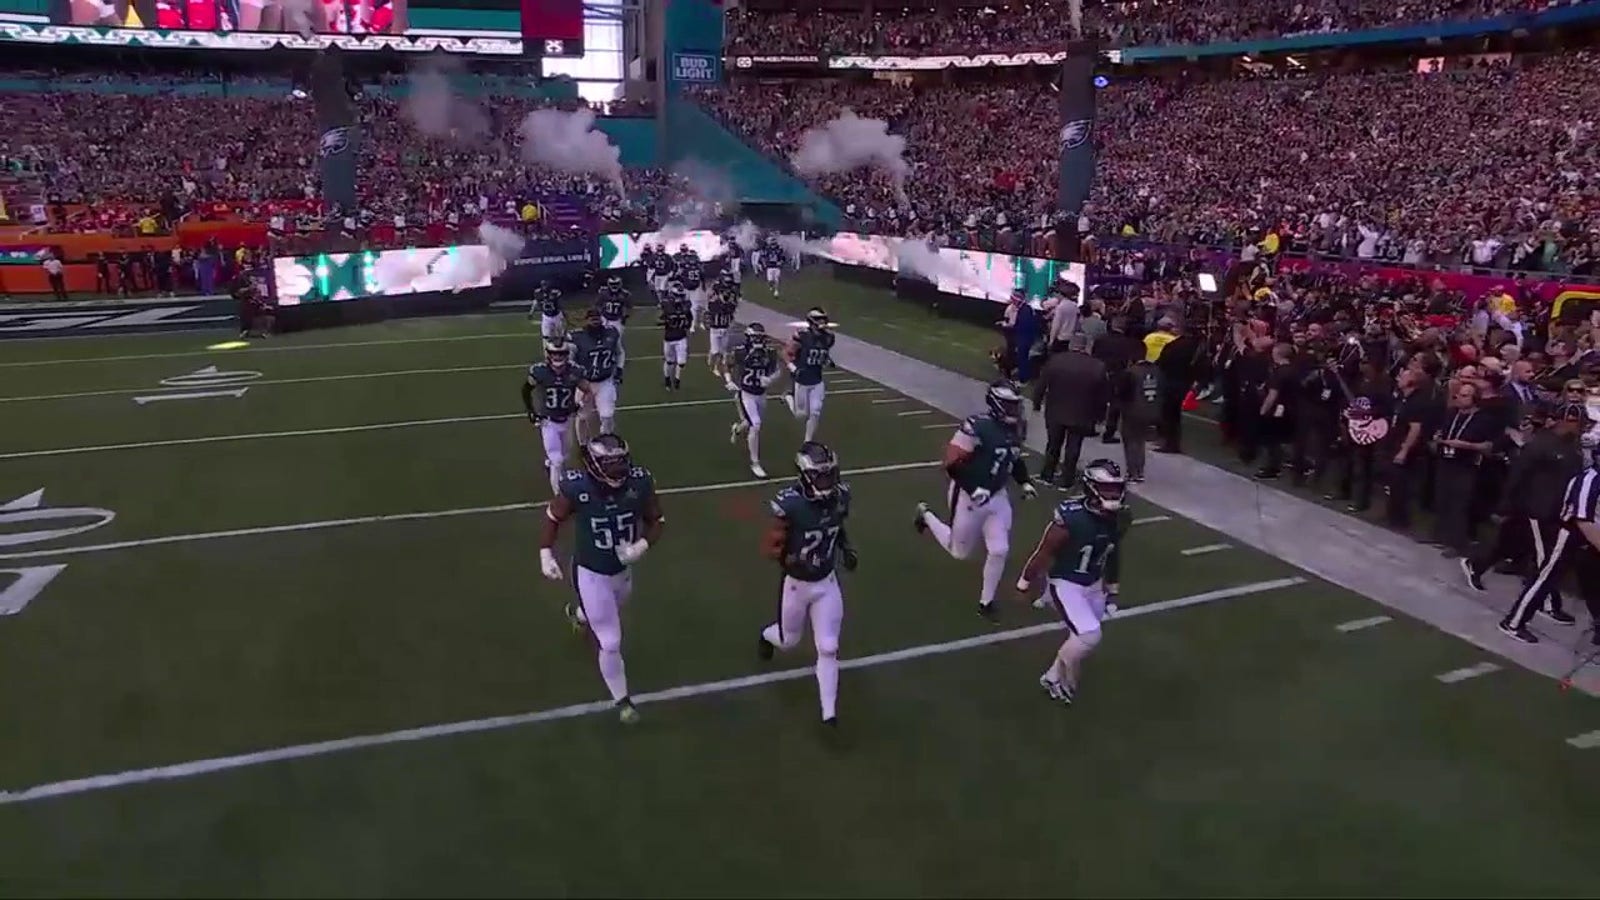 Super Bowl LVII: Eagles make their Super Bowl entrance